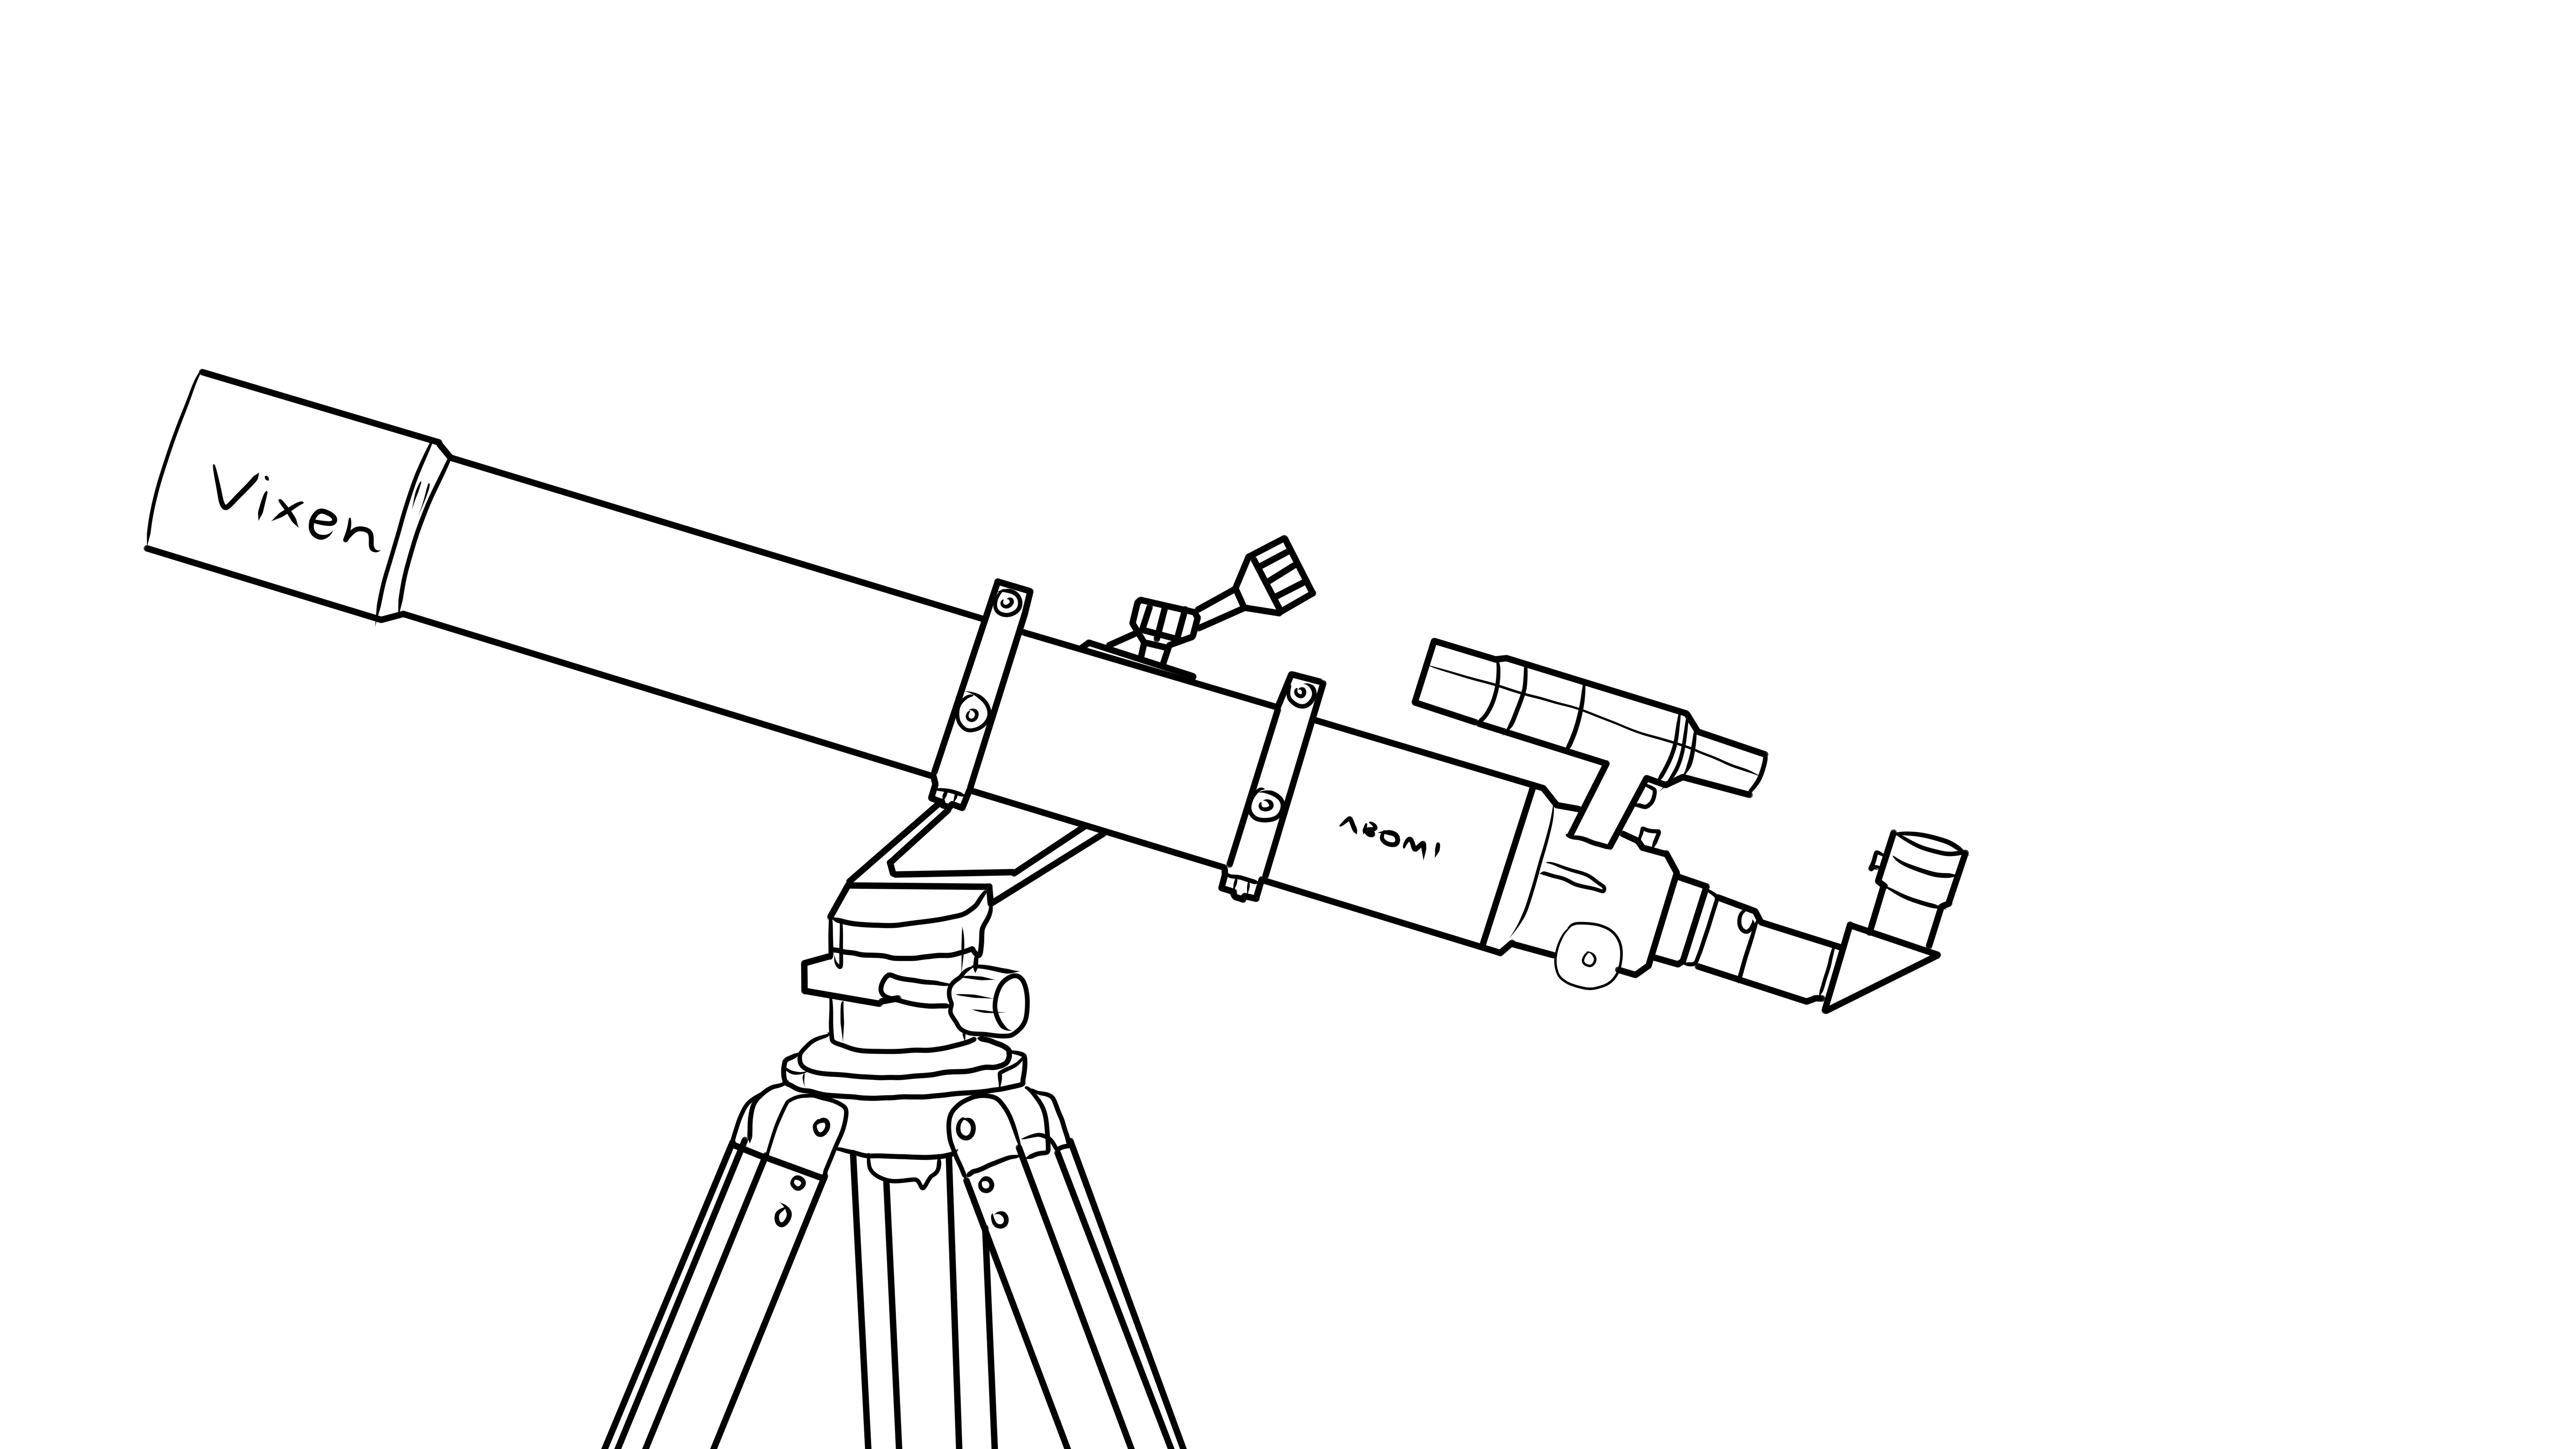 天文望远镜的画法图片